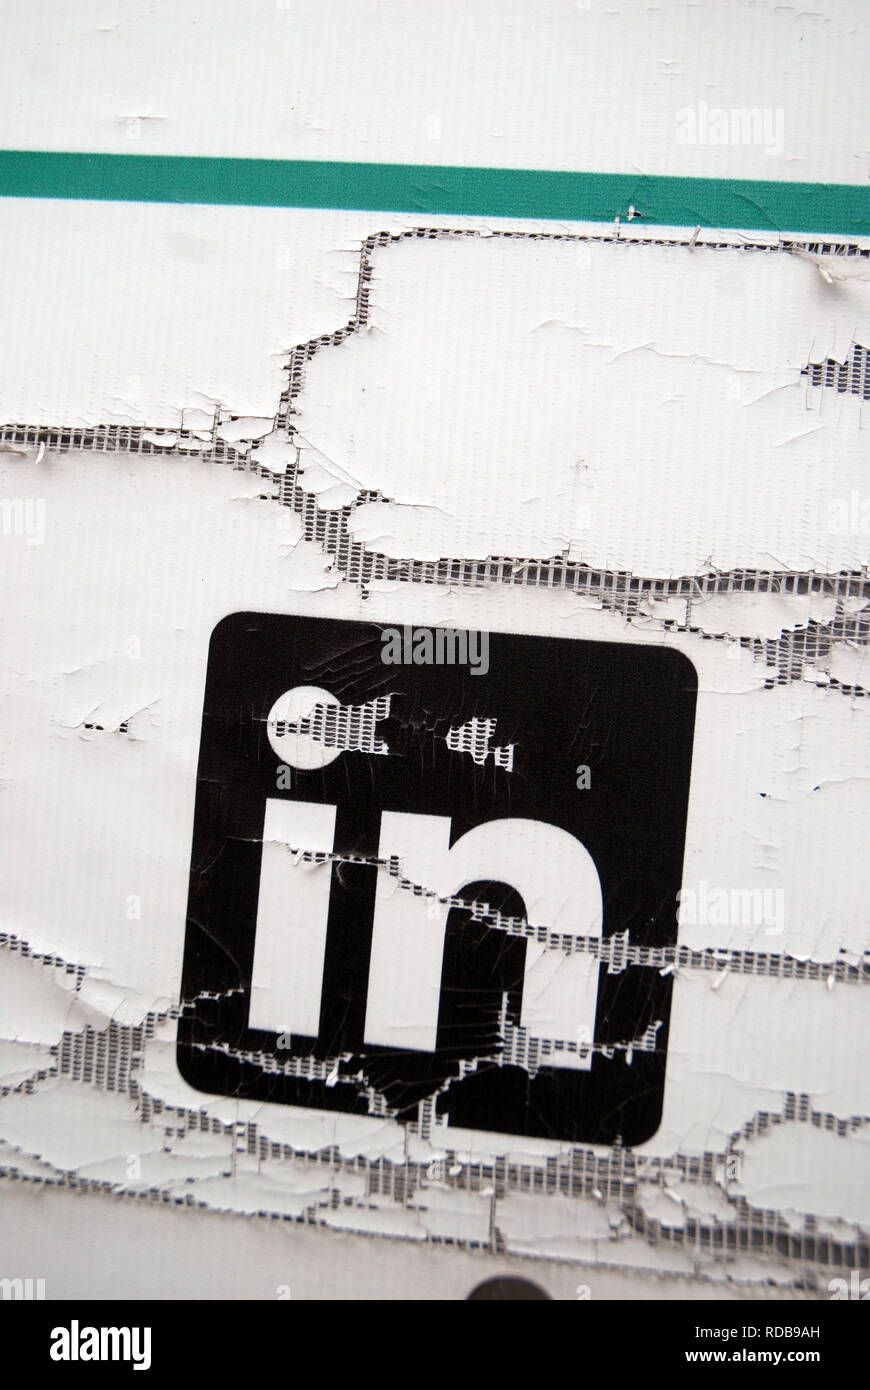 Ancienne affiche de Linkedin Logo, Portsmouth, Royaume-Uni. Banque D'Images